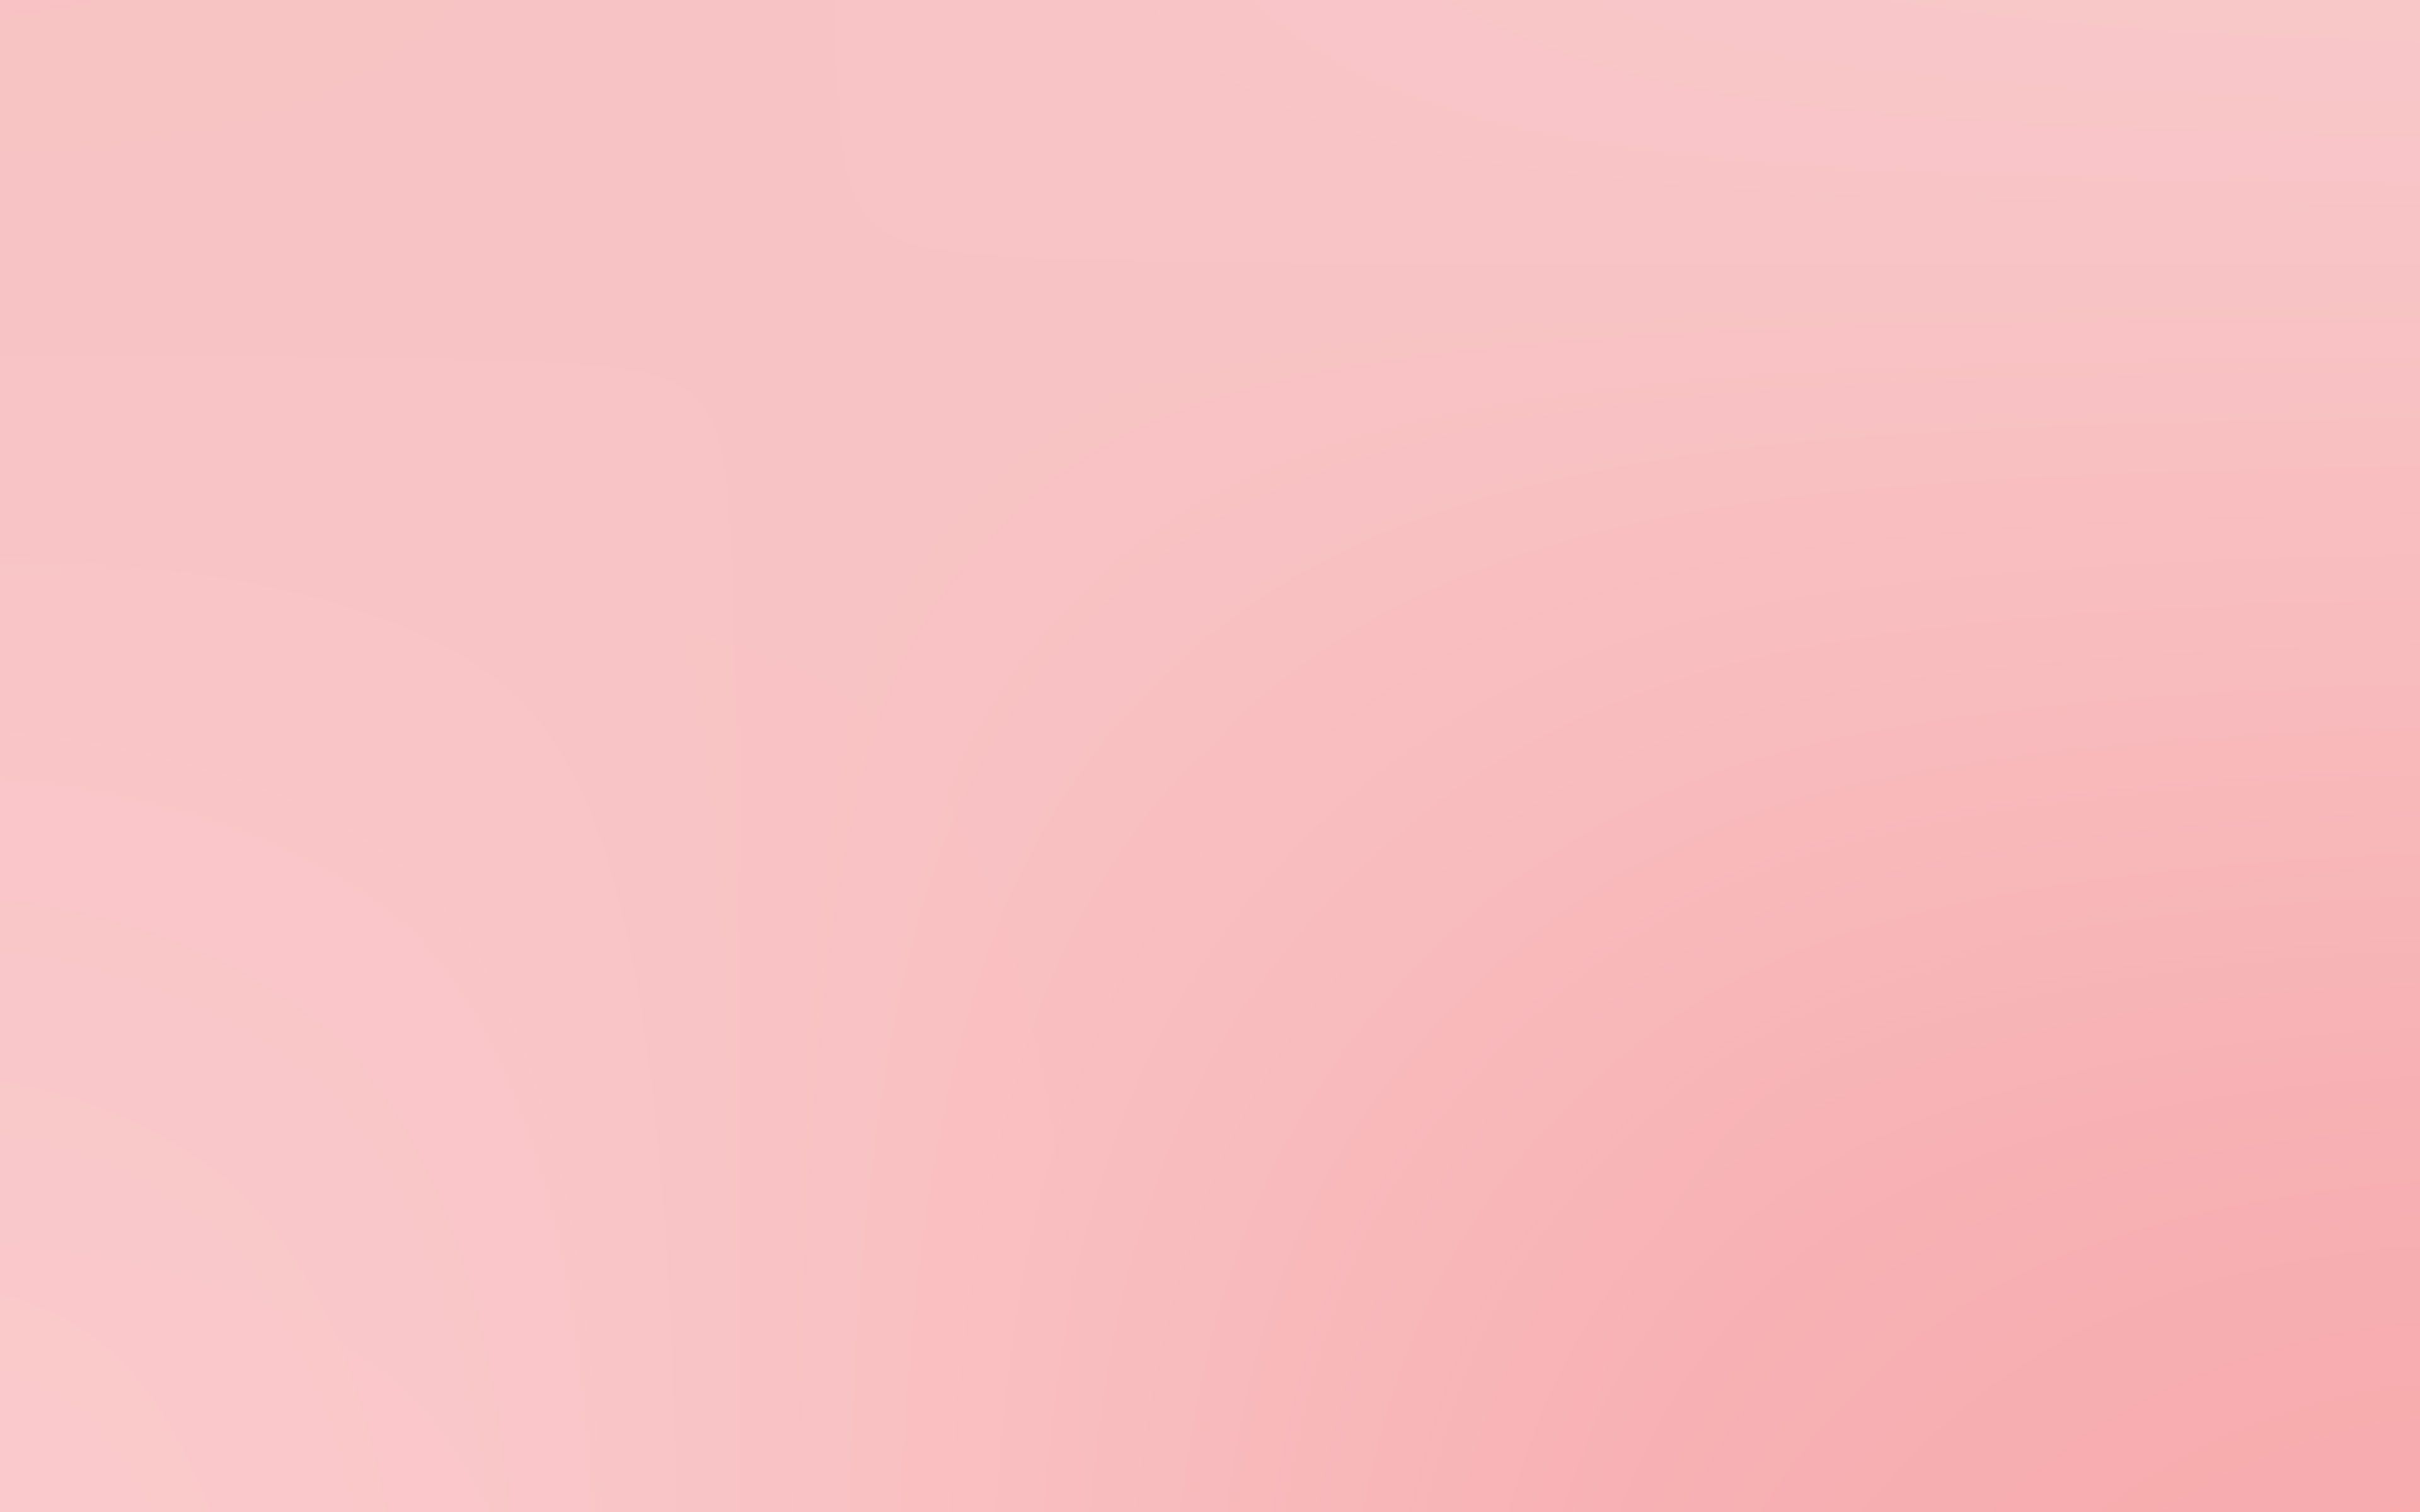 Hình nền Macbook màu Hồng Chuẩn bị trải nghiệm Macbook một cách nữ tính nhất với hình nền màu hồng. Với những kiểu hoa văn độc đáo và những hình ảnh tuyệt đẹp, bạn sẽ có được một trải nghiệm đầy tinh tế và sang trọng trên chiếc Macbook của mình.